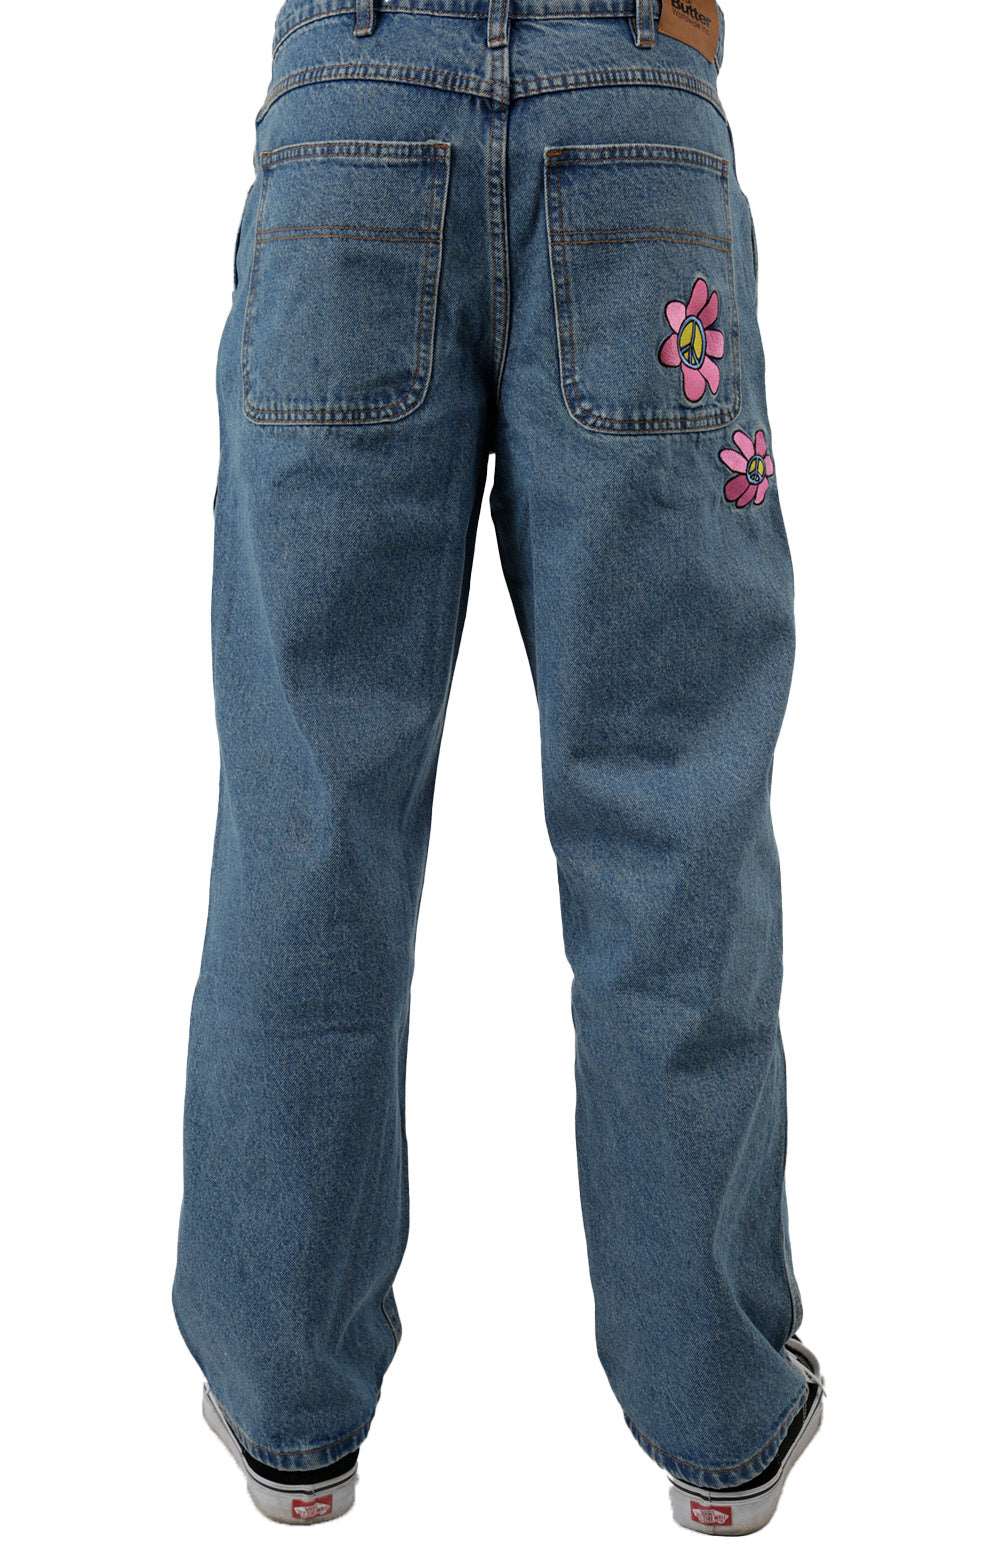 Flower Denim Pants - Washed Indigo